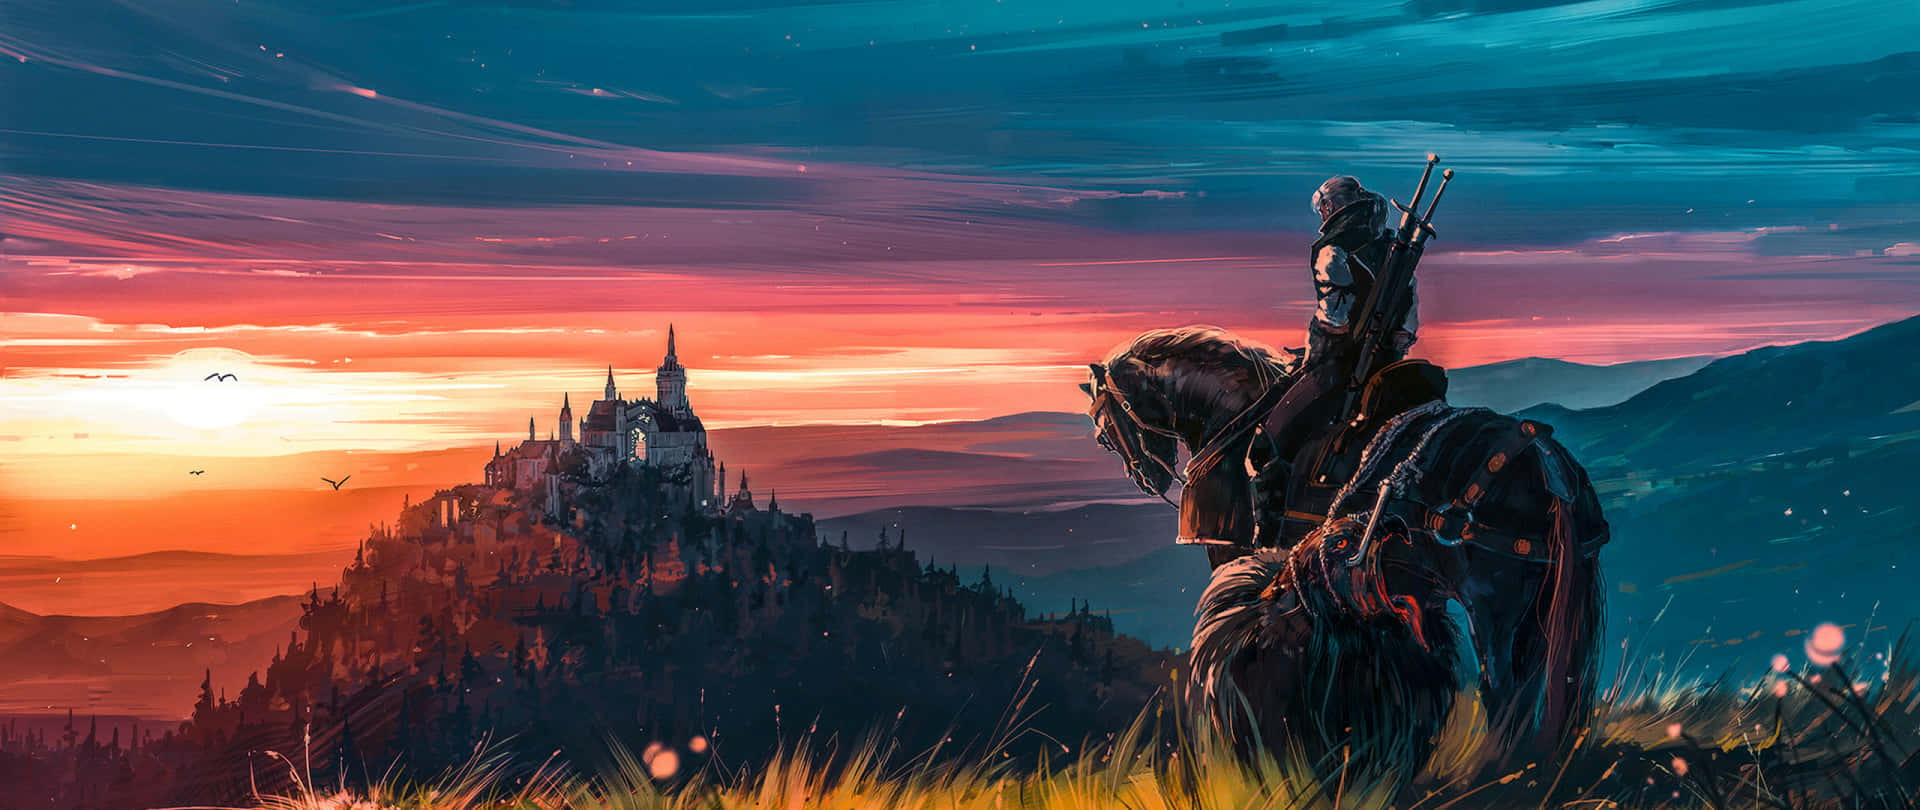 Geralt Of Rivia Art 2560x1080 Wallpaper